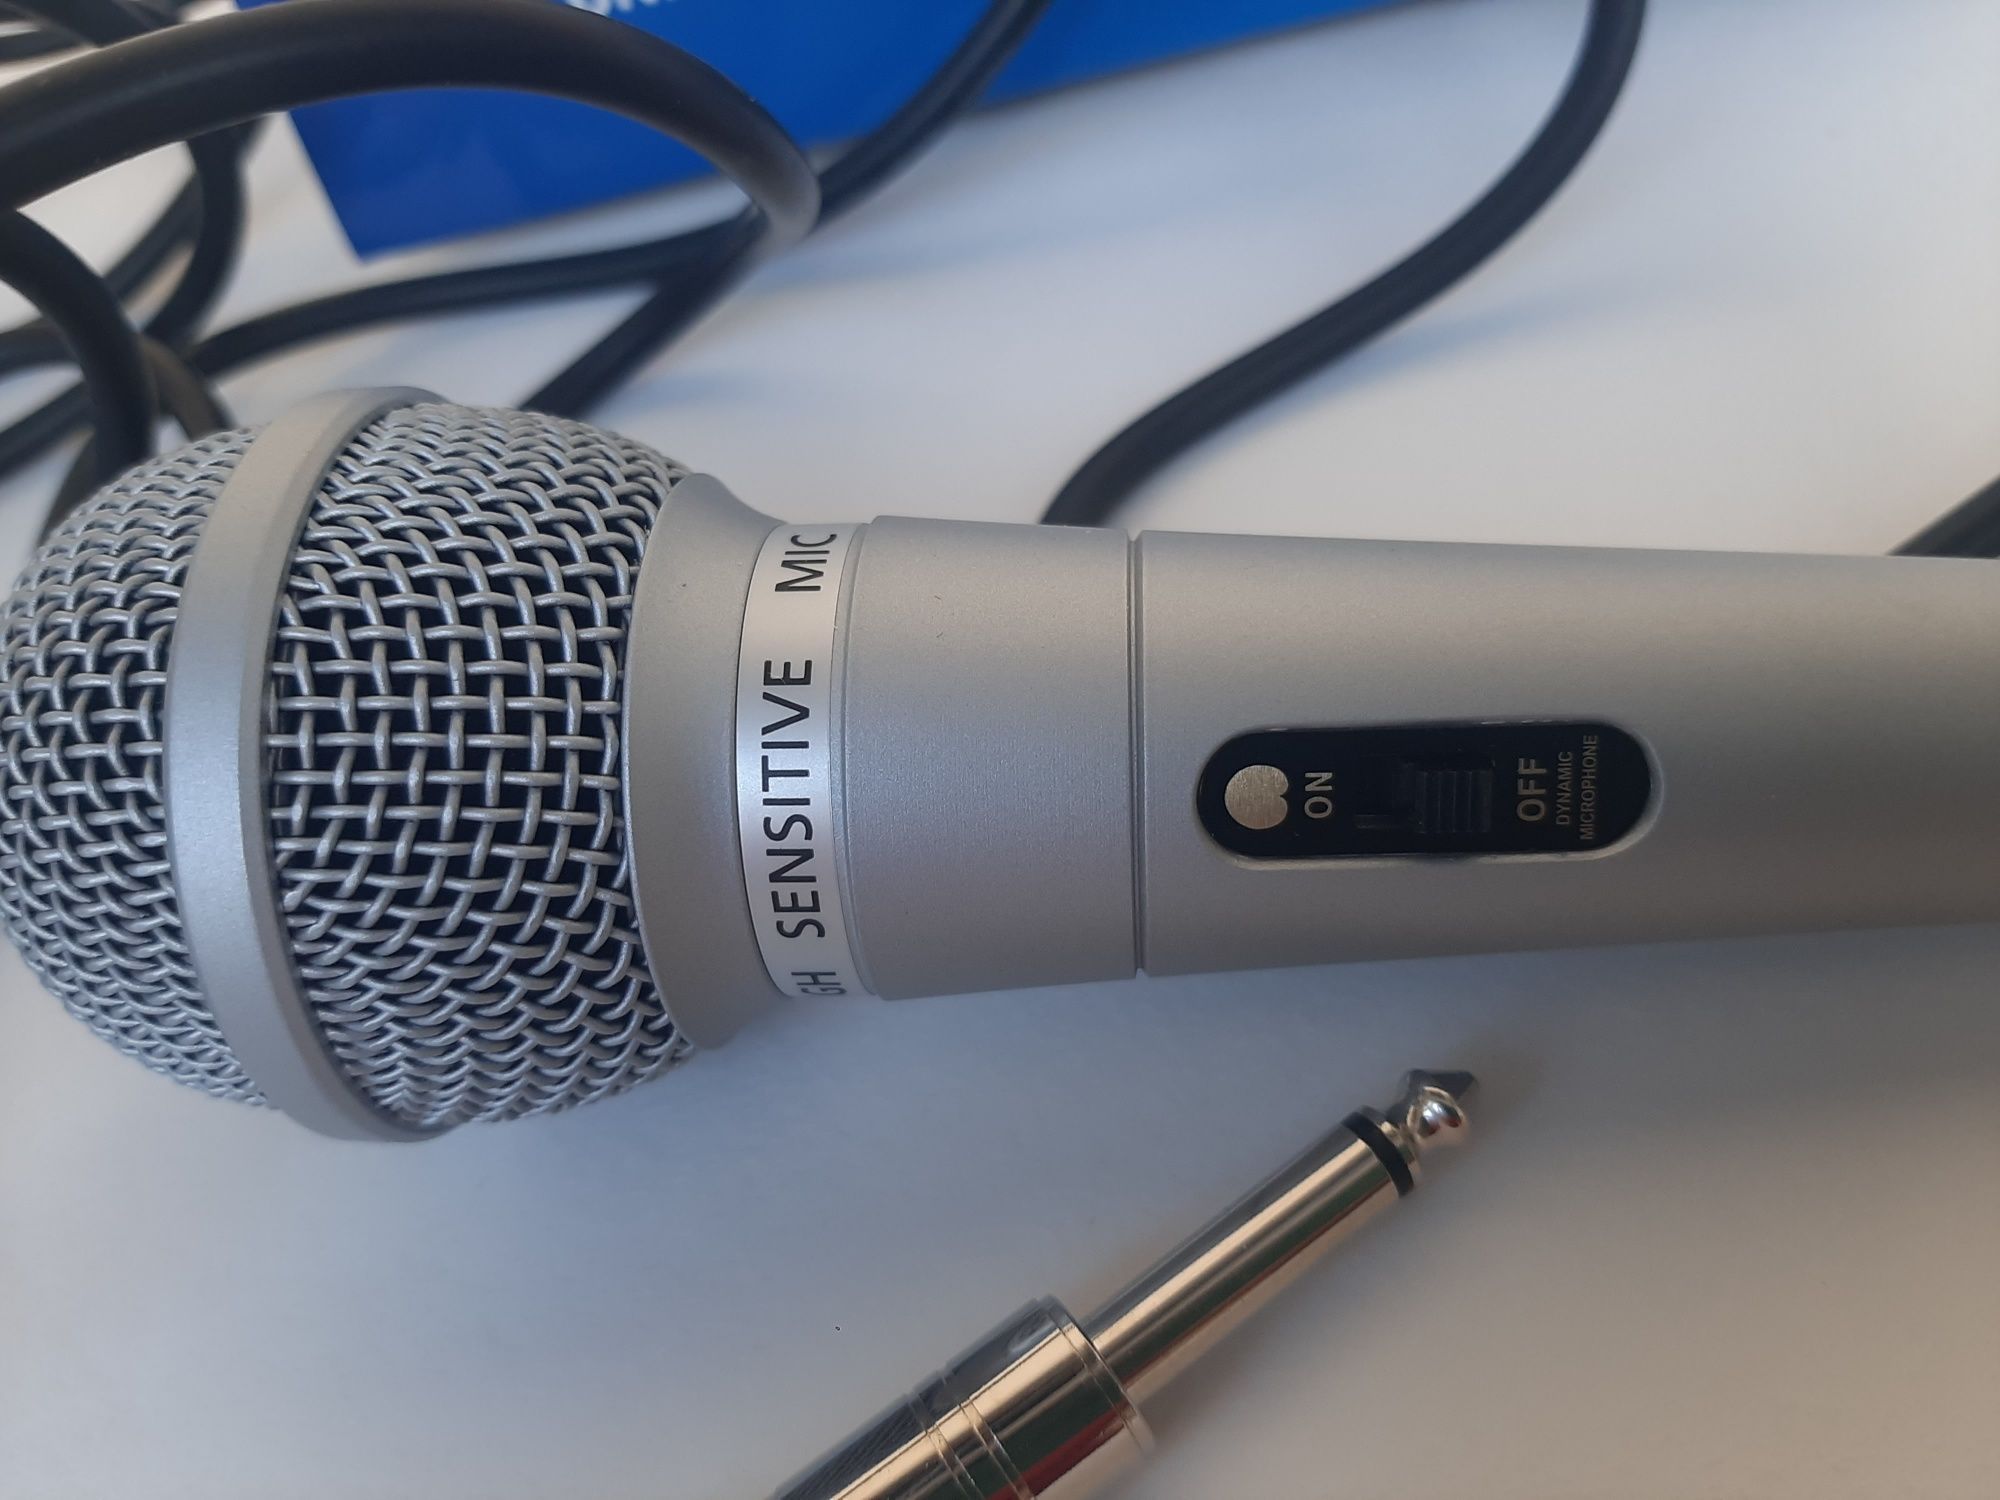 Микрофон BBK новый. Длина провода 4,5 метра